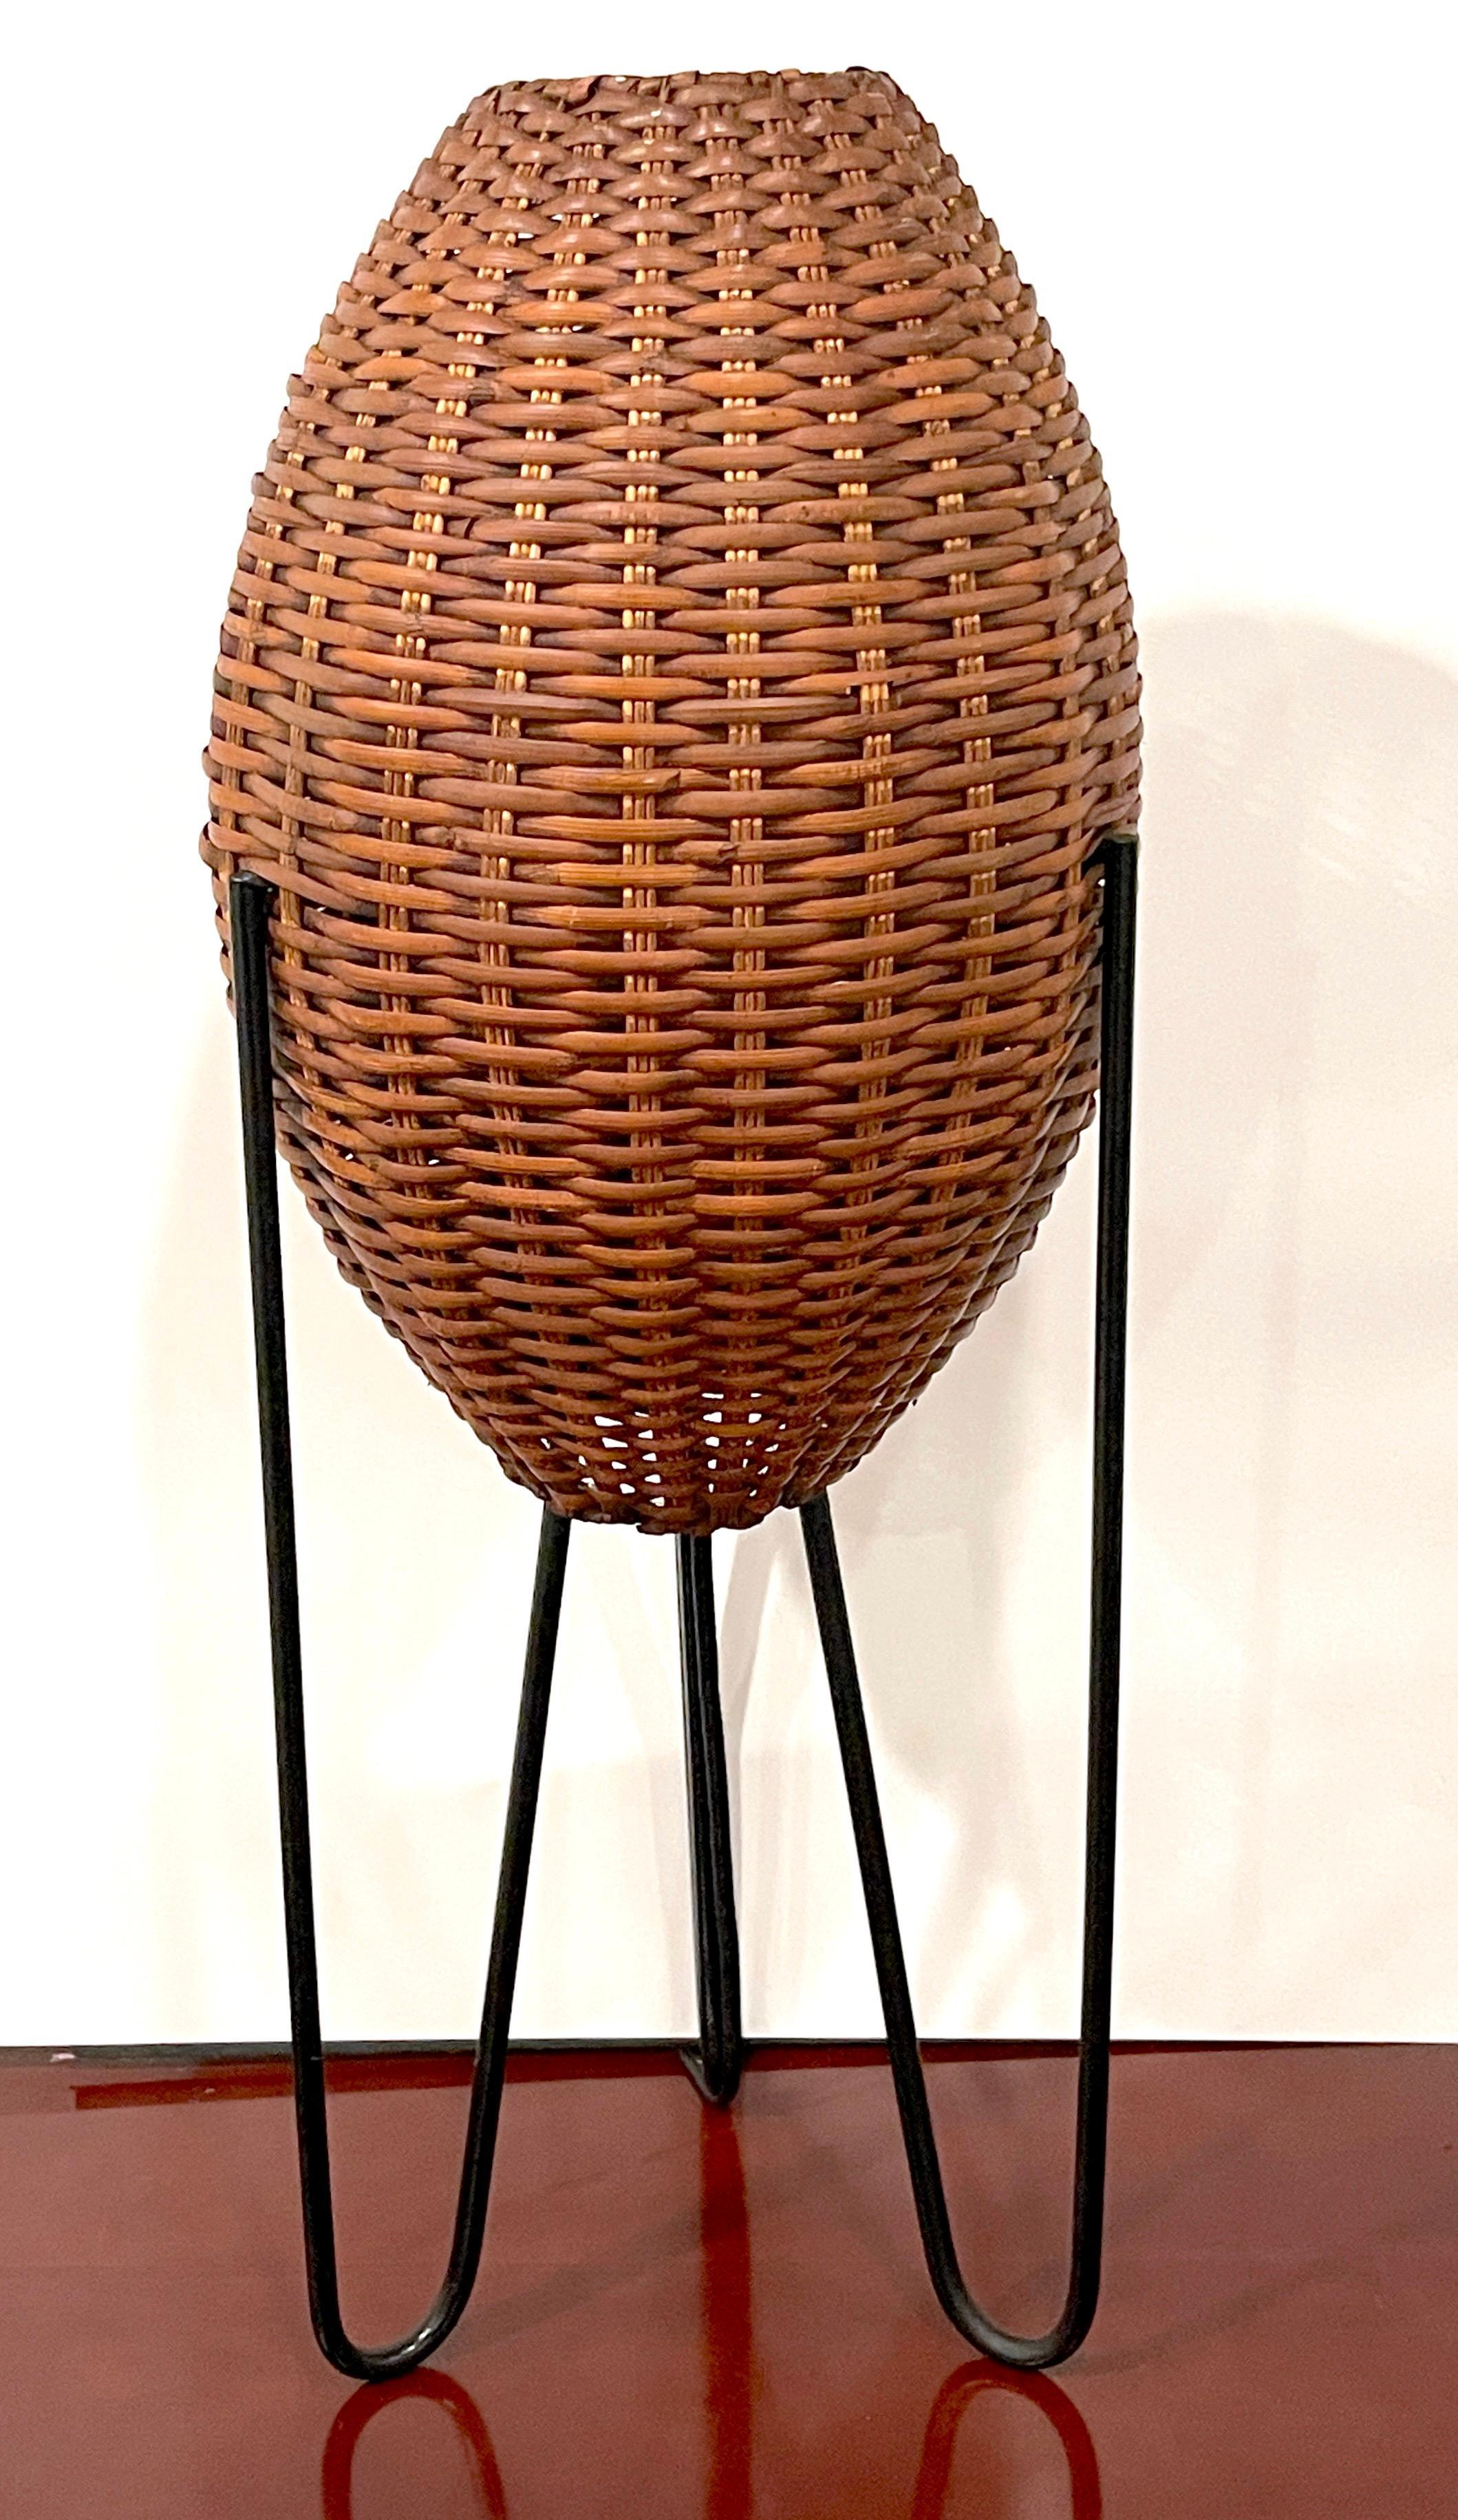 Paul Mayen Tischleuchte 'Beehive' aus Korbgeflecht, um 1965
Entworfen und produziert von Paul Mayen

Paul Mayen Wicker 'Beehive' Tischlampe, ca. 1965, entworfen und hergestellt von dem bekannten Designer Paul Mayen. Mit einer Höhe von 27 Zoll hat